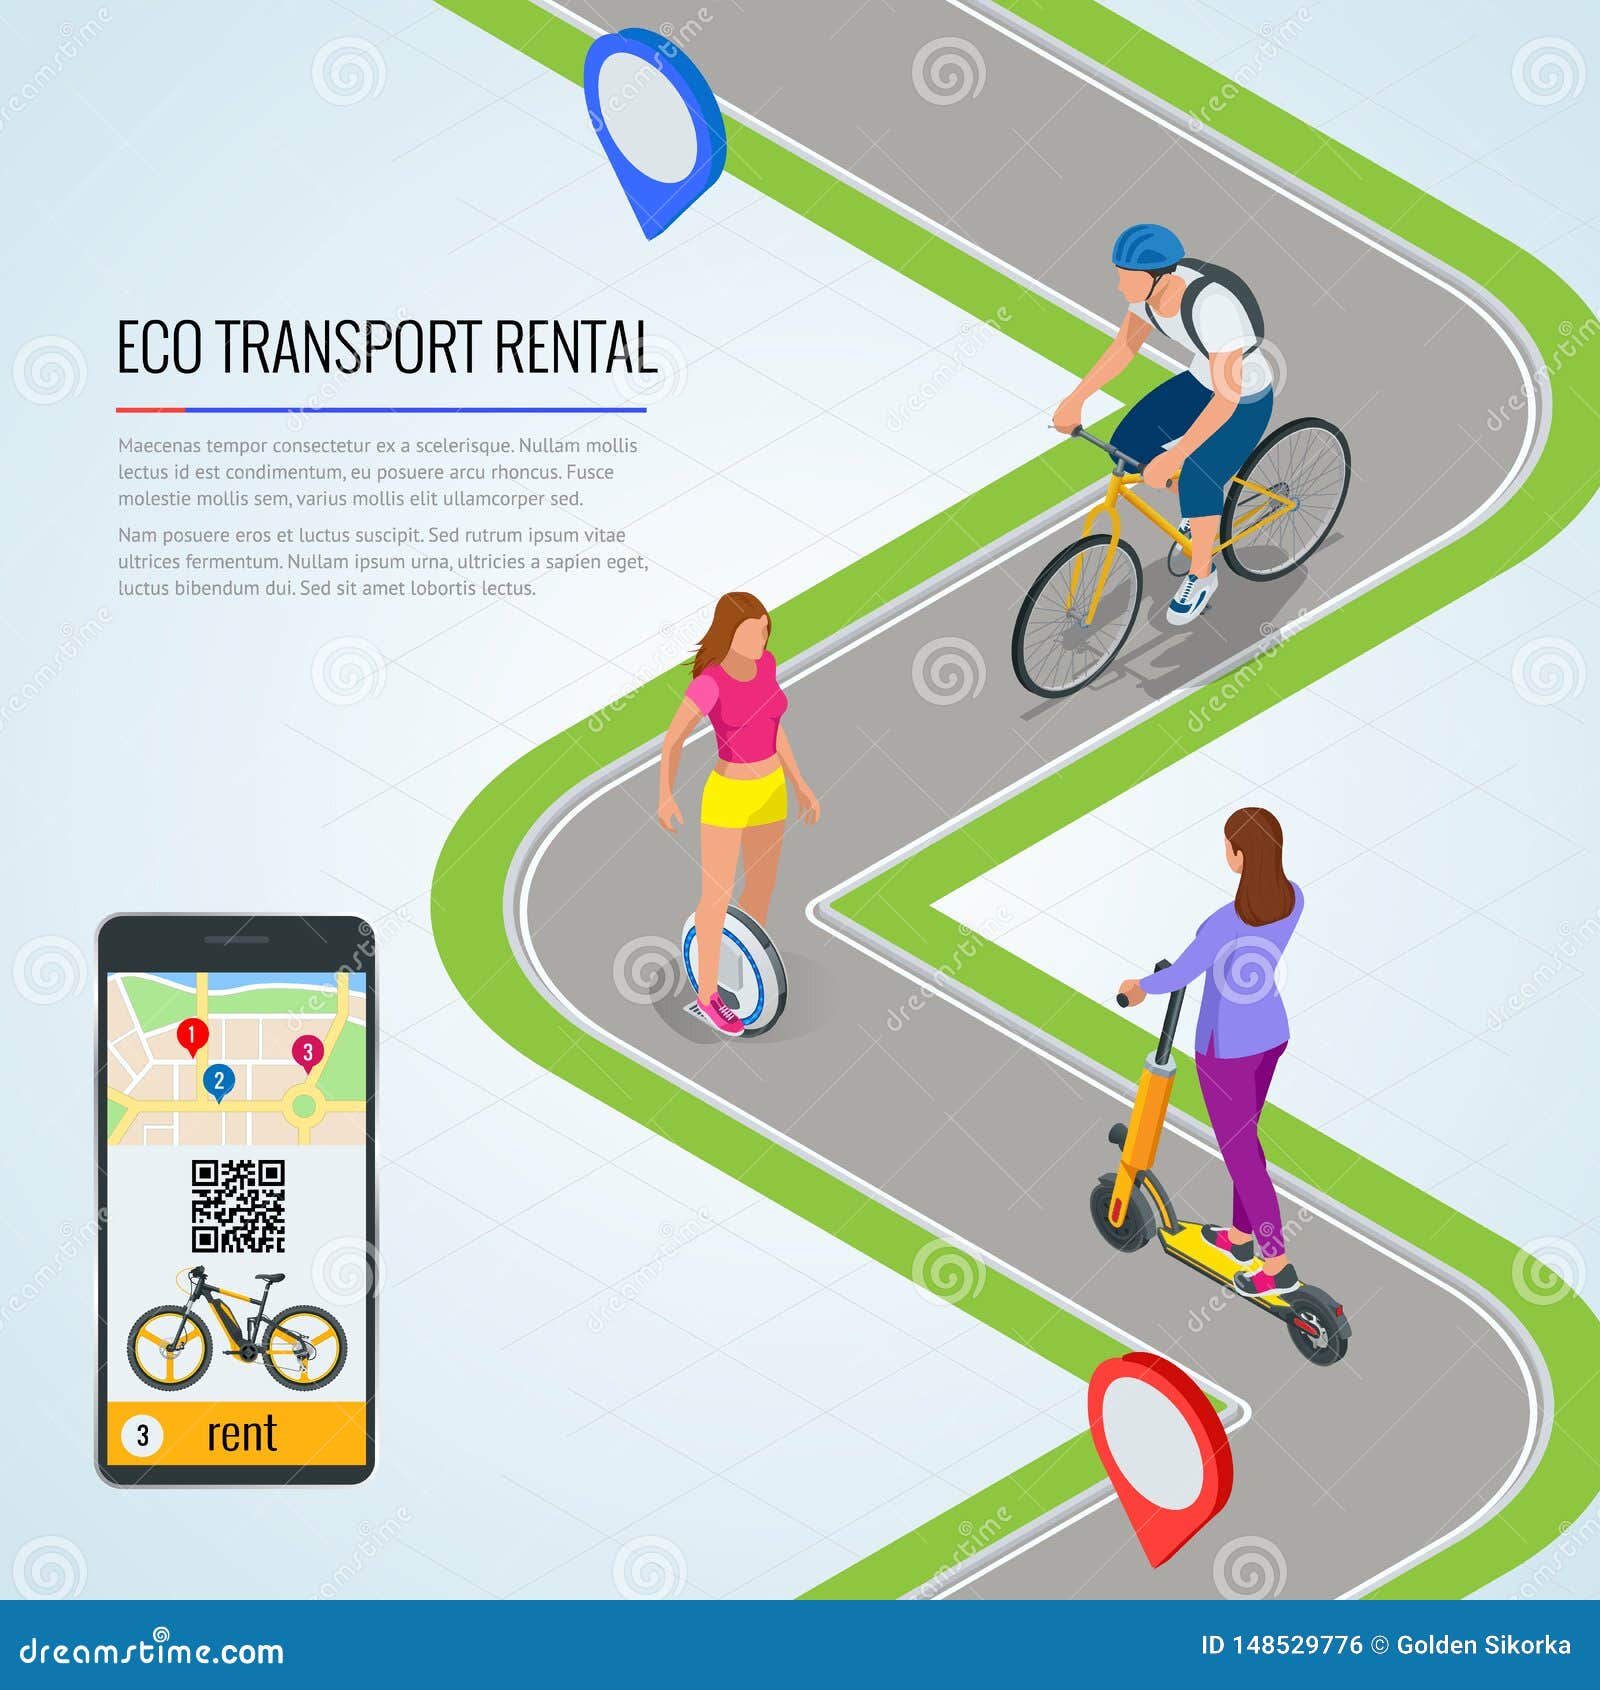 app per bicicletta gratis